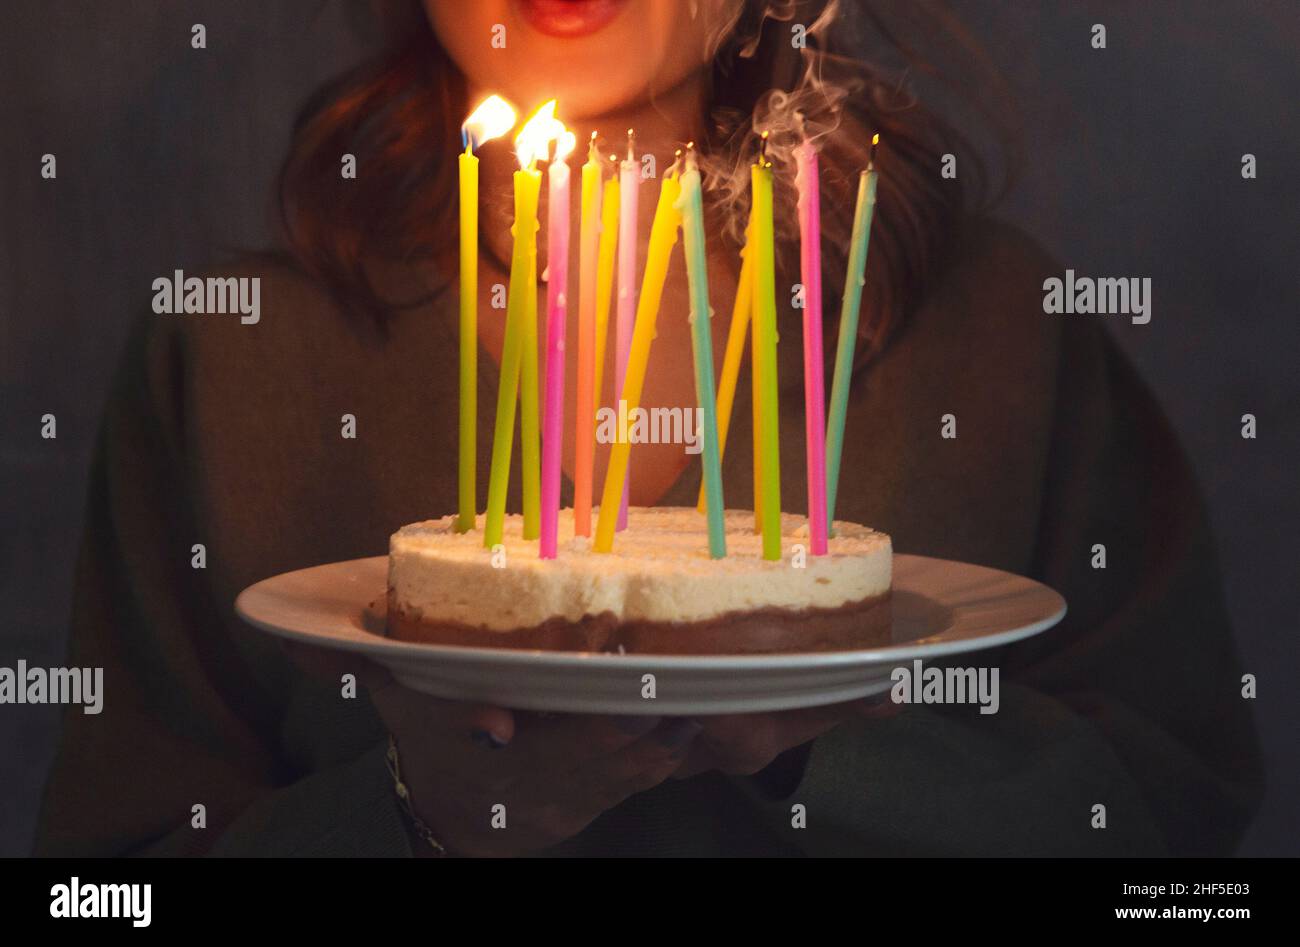 Jeune femme souriante tenant un gâteau d'anniversaire maison avec des bougies allumées à l'intérieur, vue latérale.Une femme apporte une tarte aux jours.Anniversaire traditio Banque D'Images